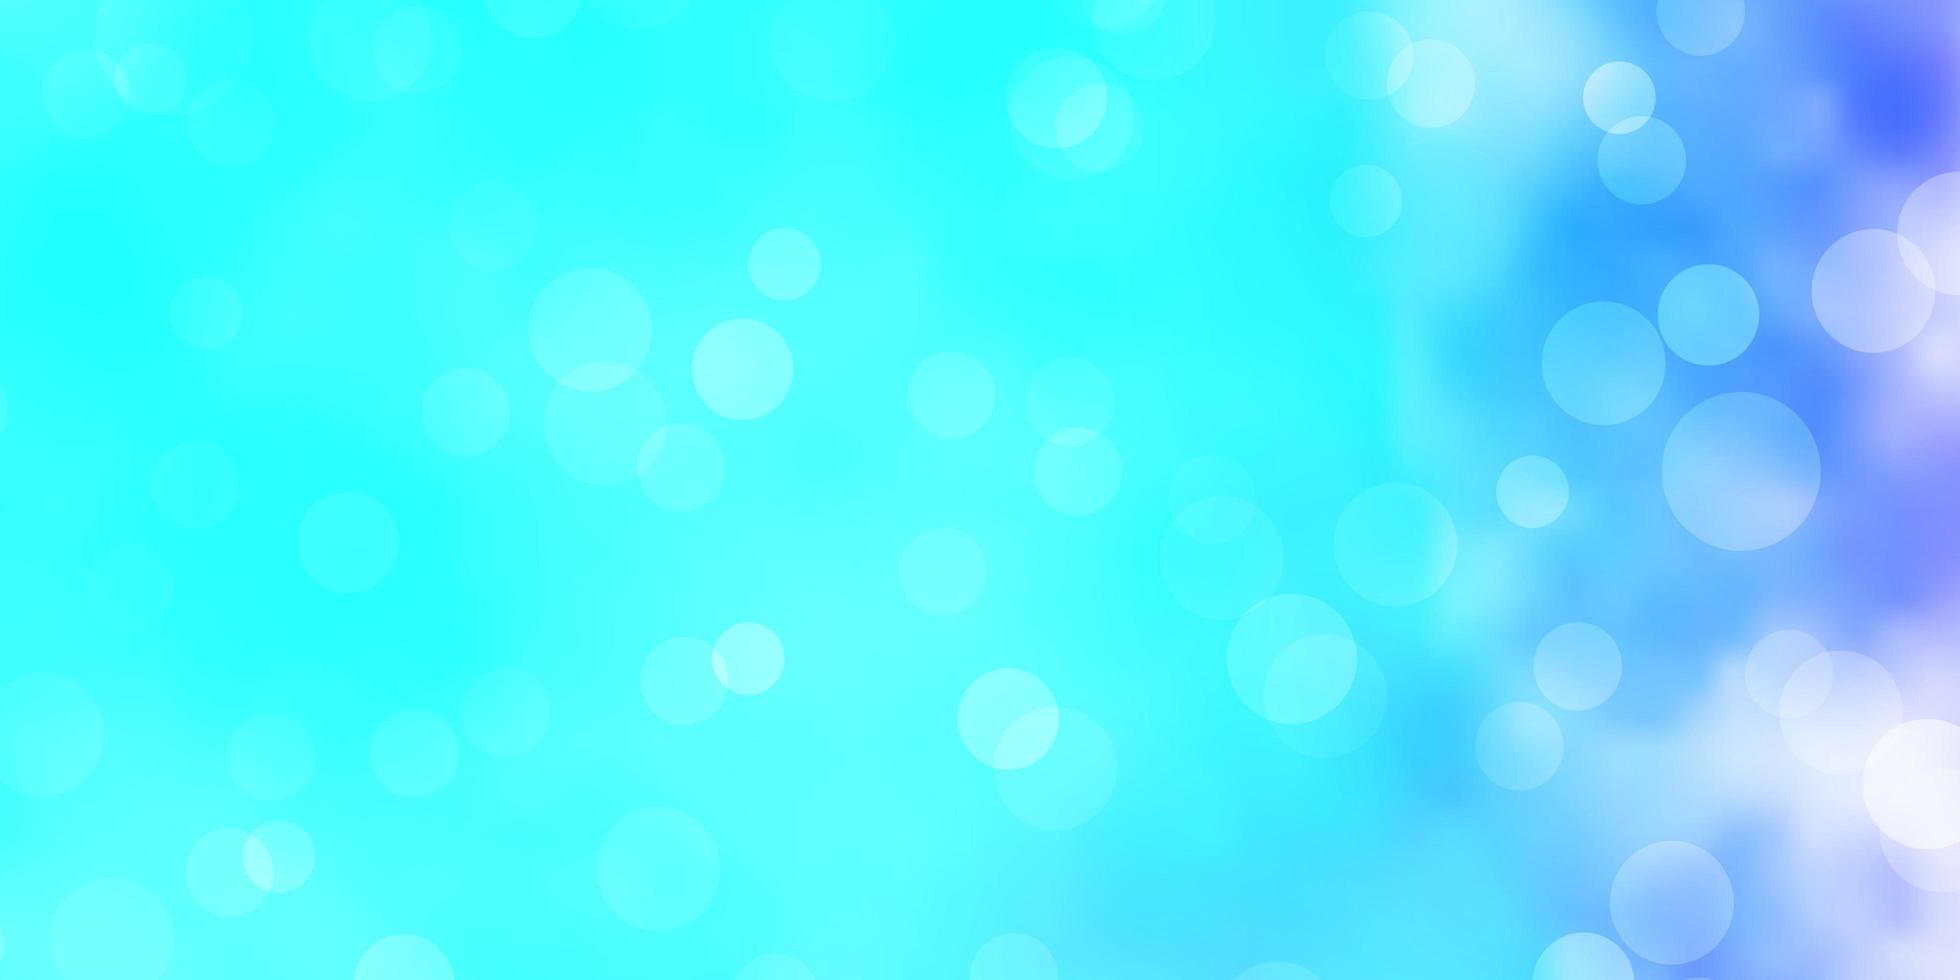 ljusrosa, blå vektorbakgrund med bubblor. vektor